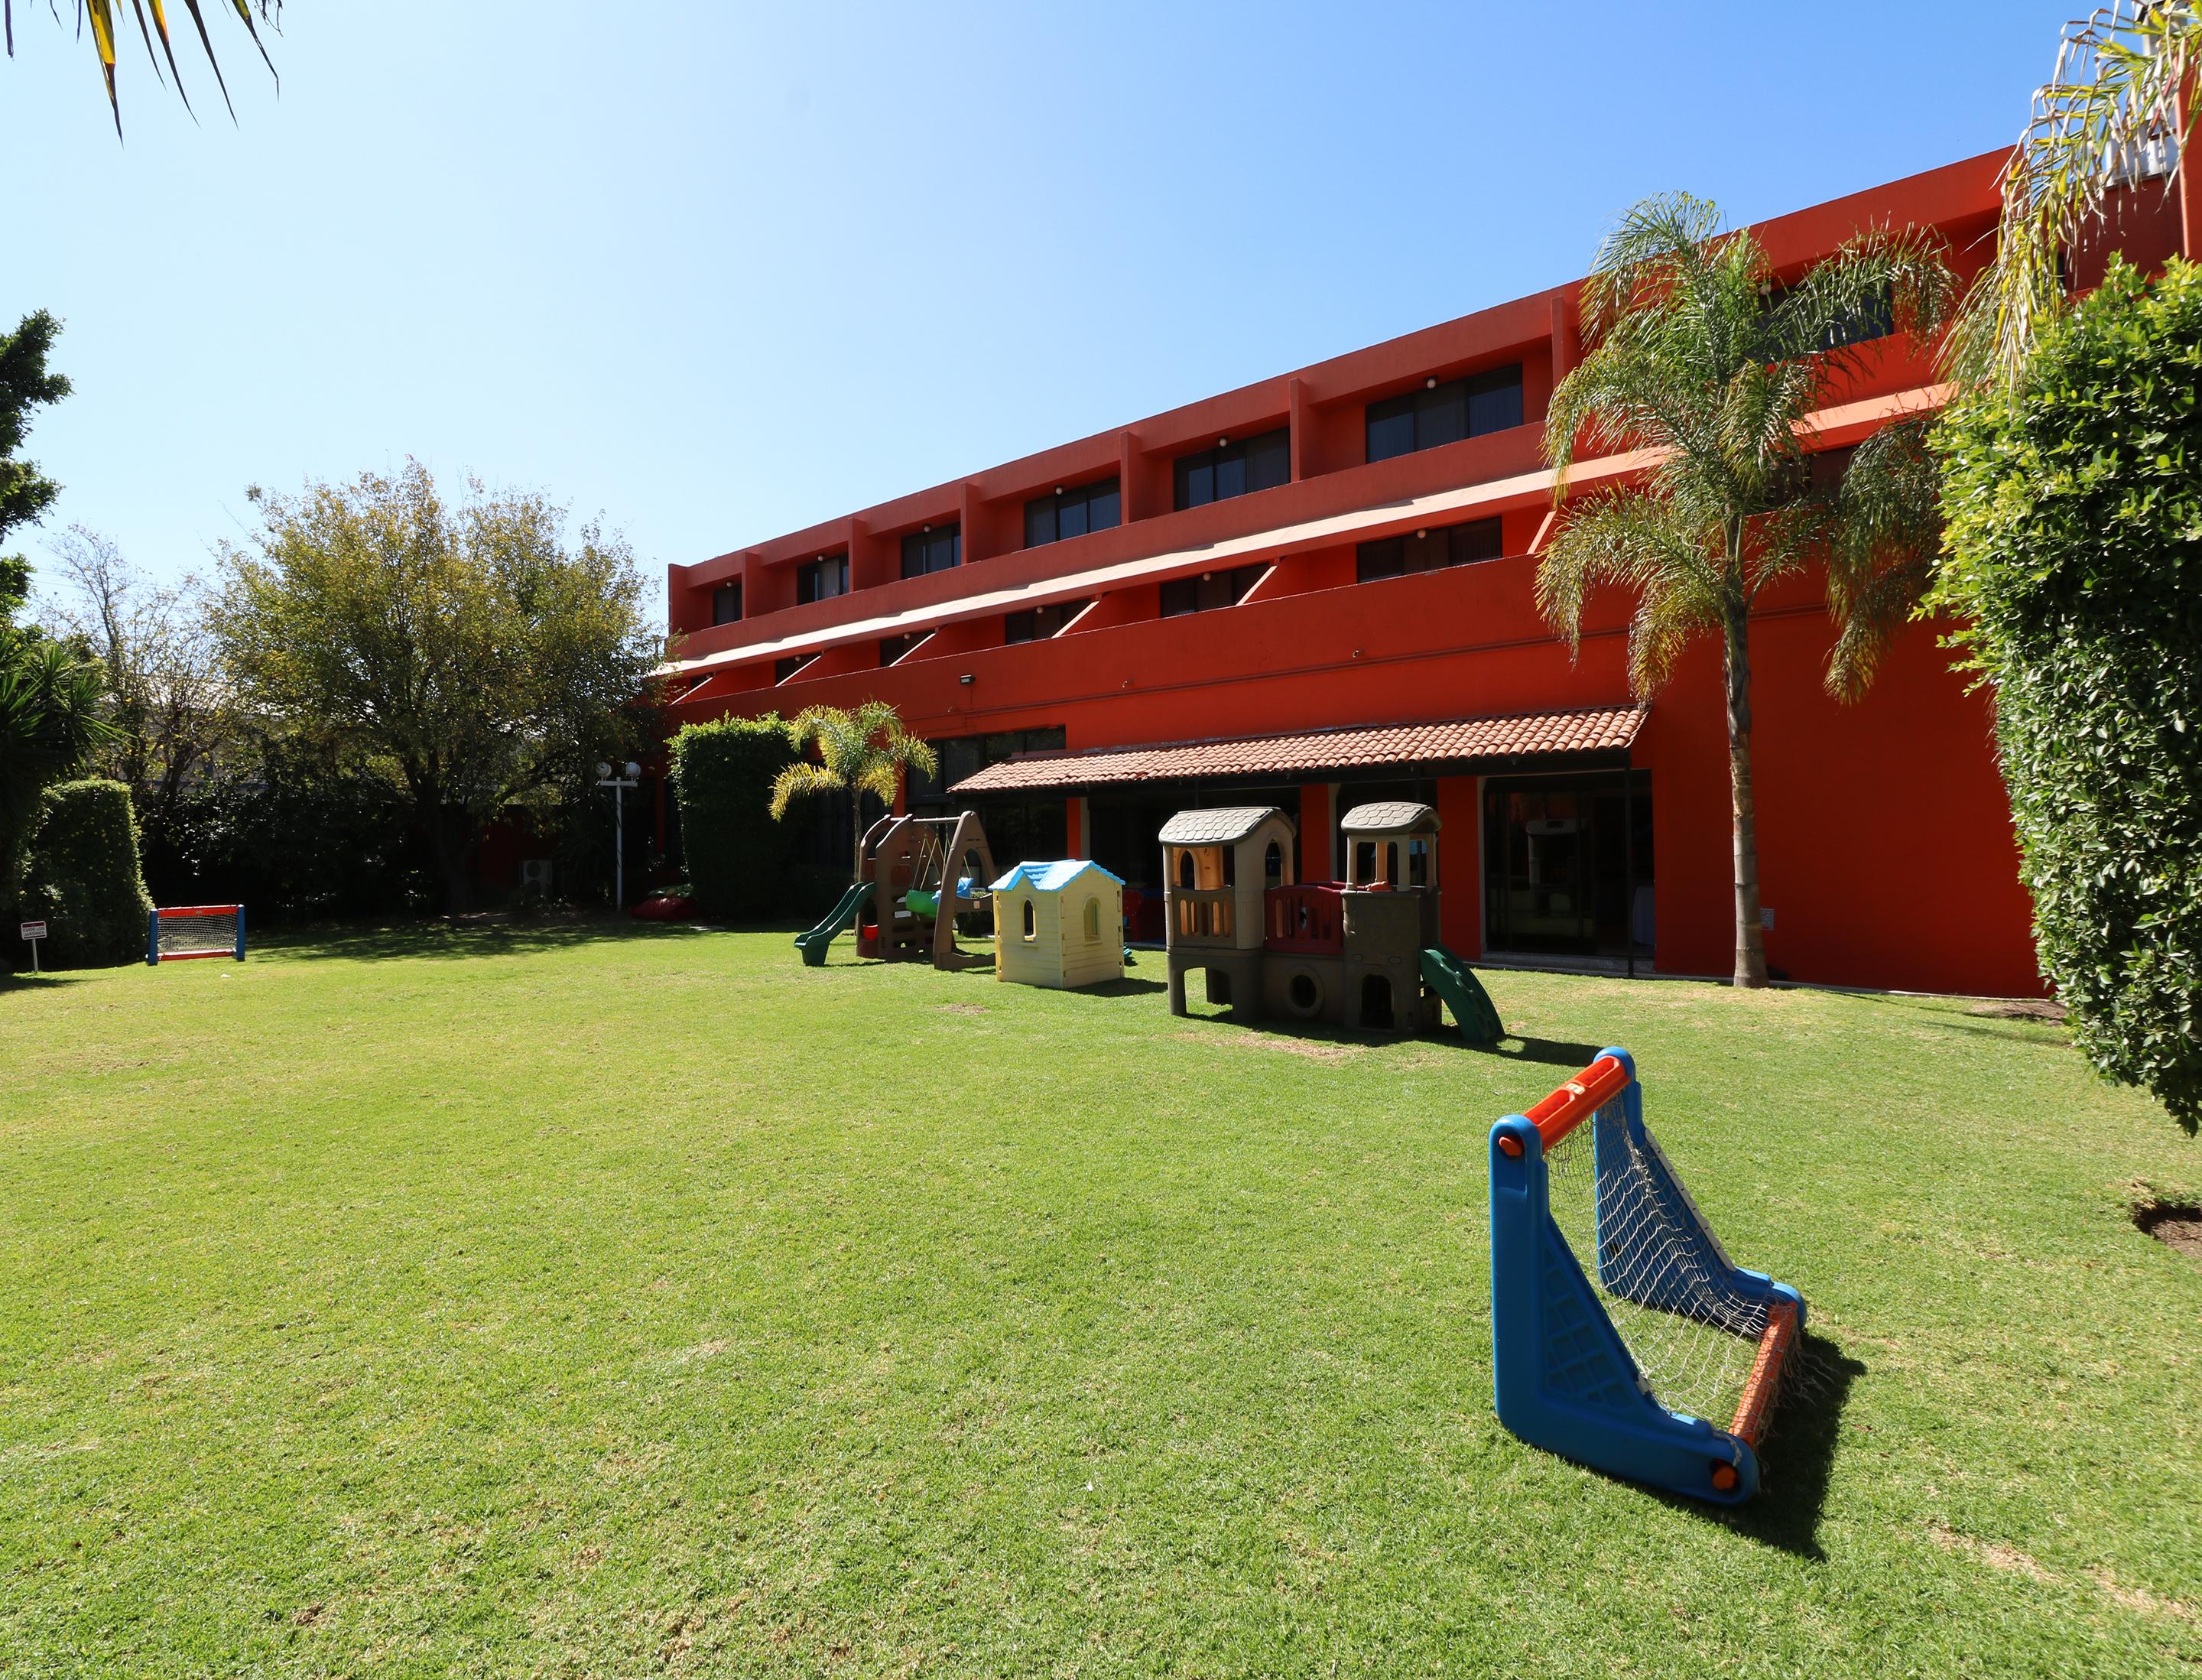 Отель Mision Aguascalientes Zona Sur Экстерьер фото